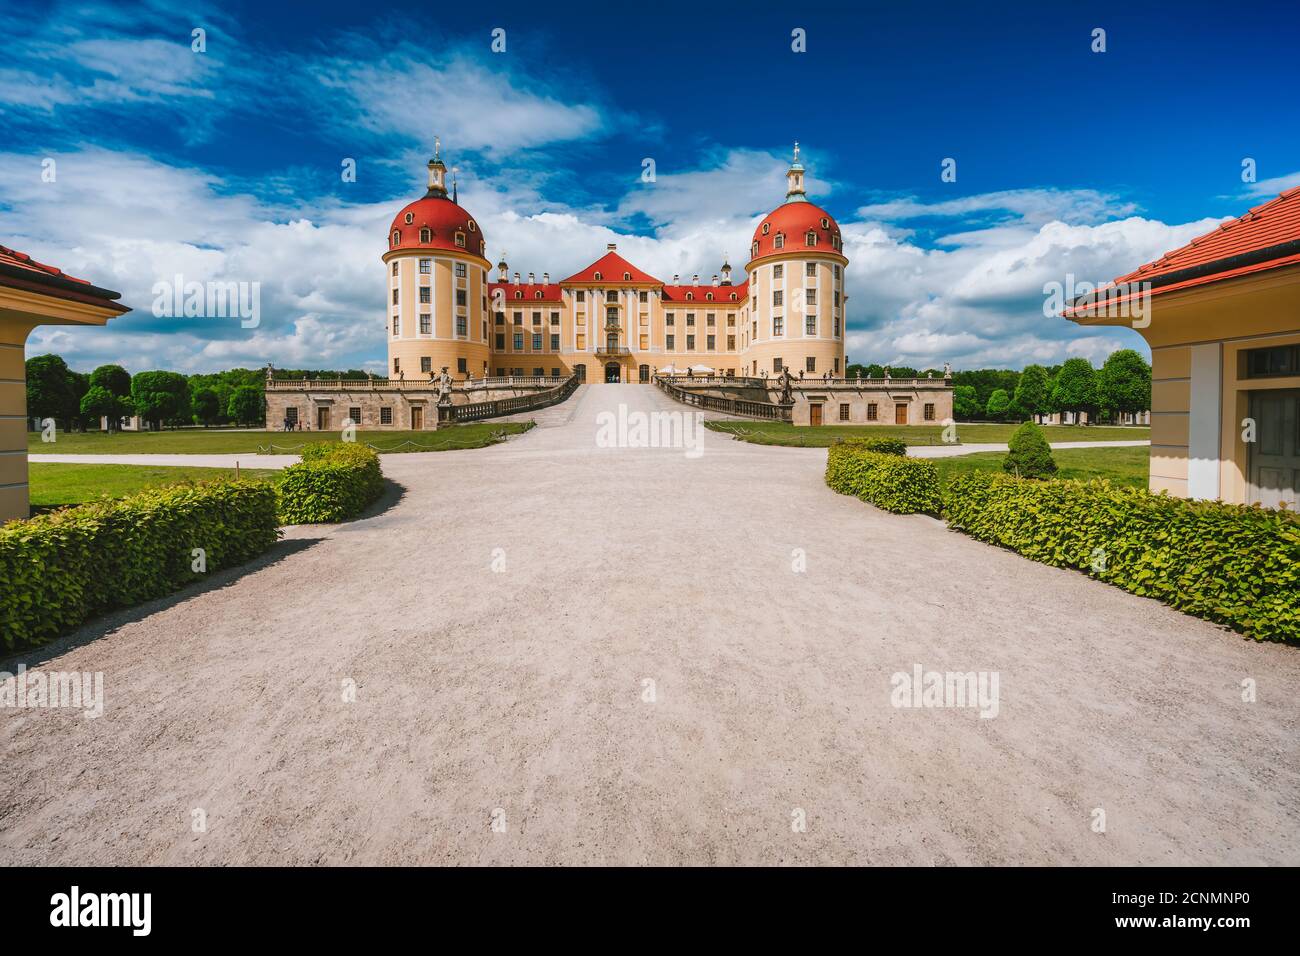 Deutschland, Sachsen Region, Dresden, Schloss Moritzburg. Schöner Frühlingstag mit blauem Himmel und weißen Wolken. Fußweg führt zu Schloss und Park. Stockfoto